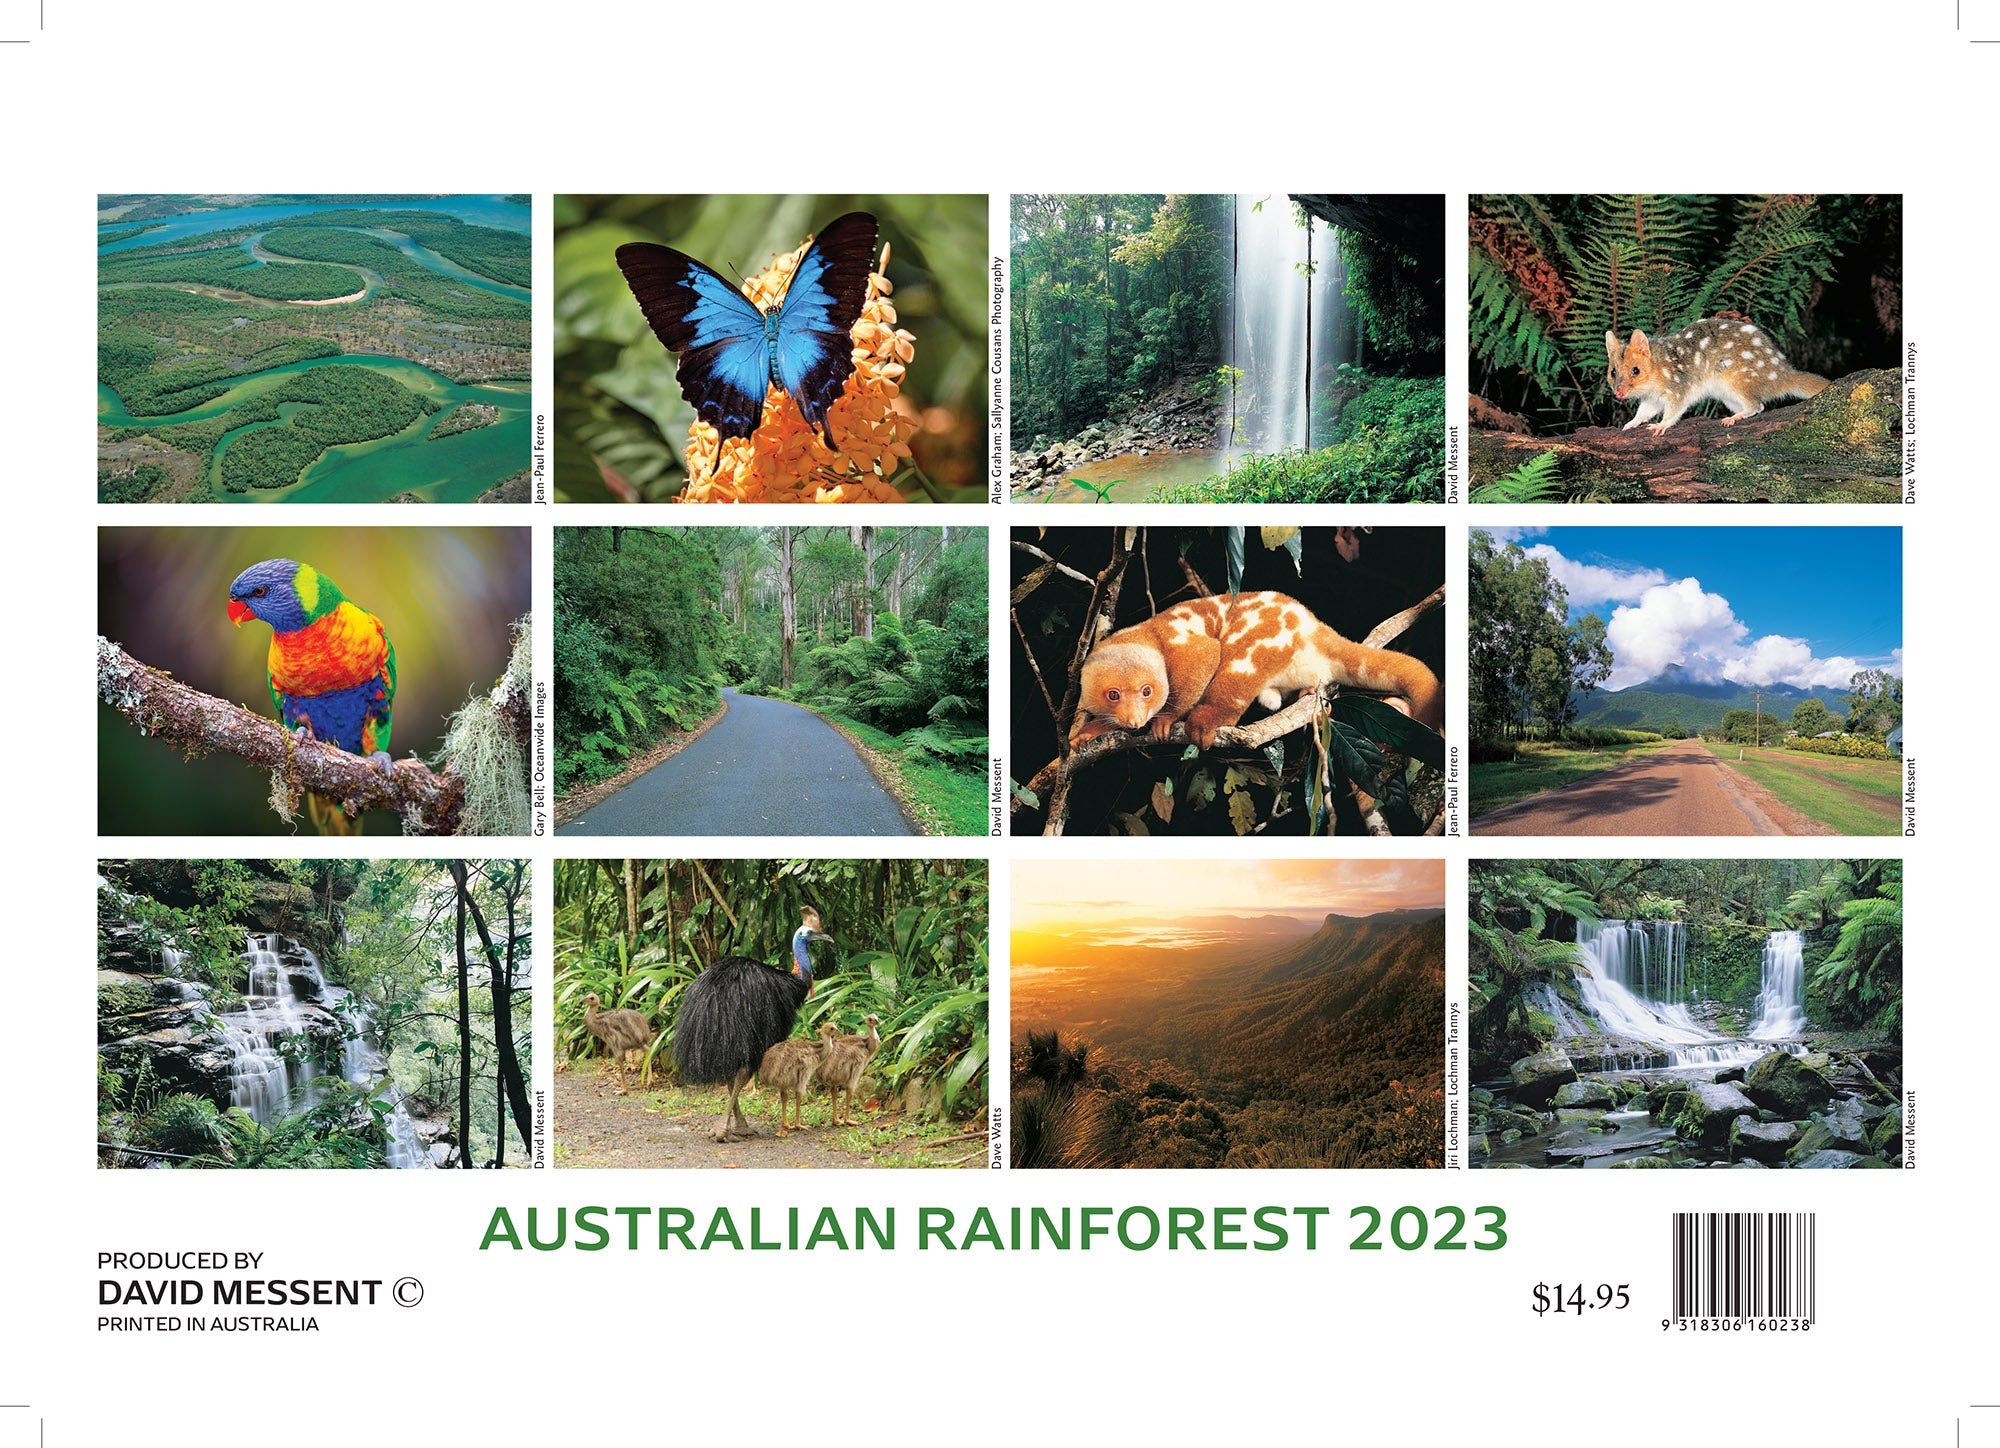 2023 Australian Rainforest by David Messent - Horizontal Wall Calendar